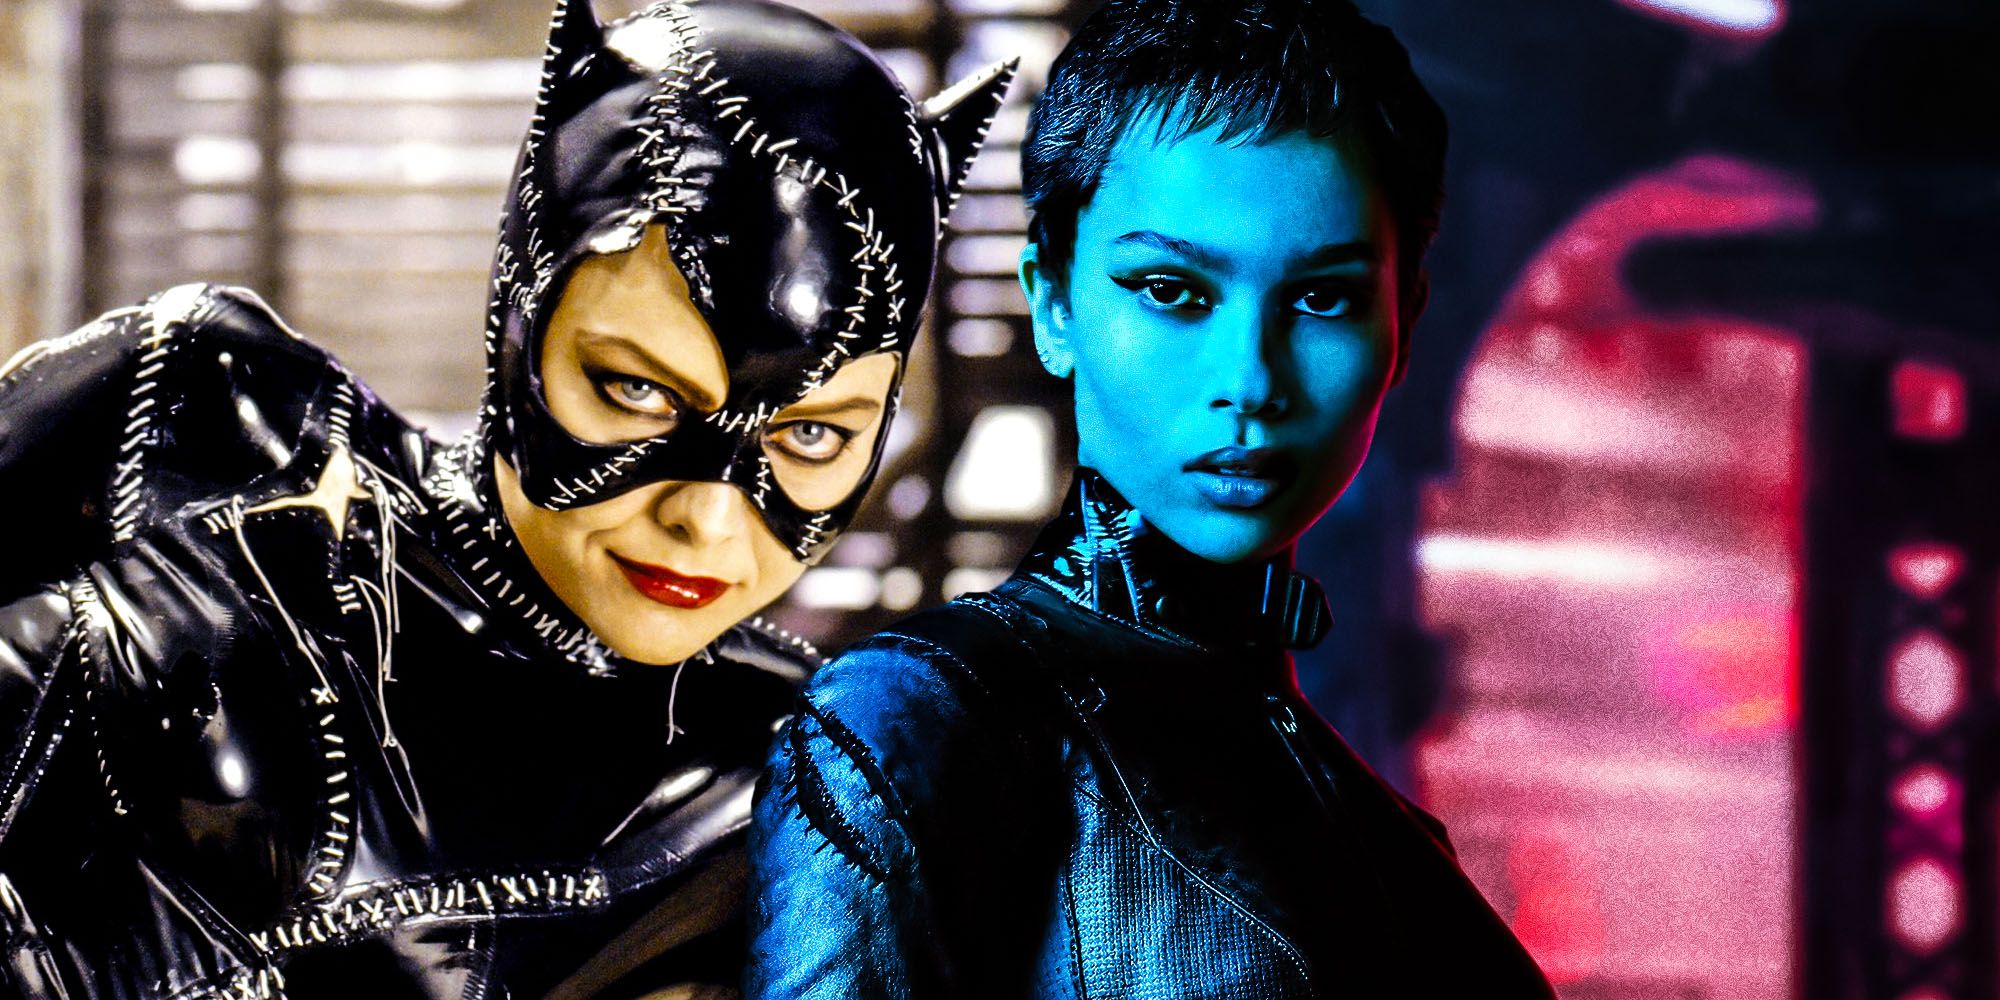 Sí, la Catwoman de Batman finalmente supera a la versión de Burton